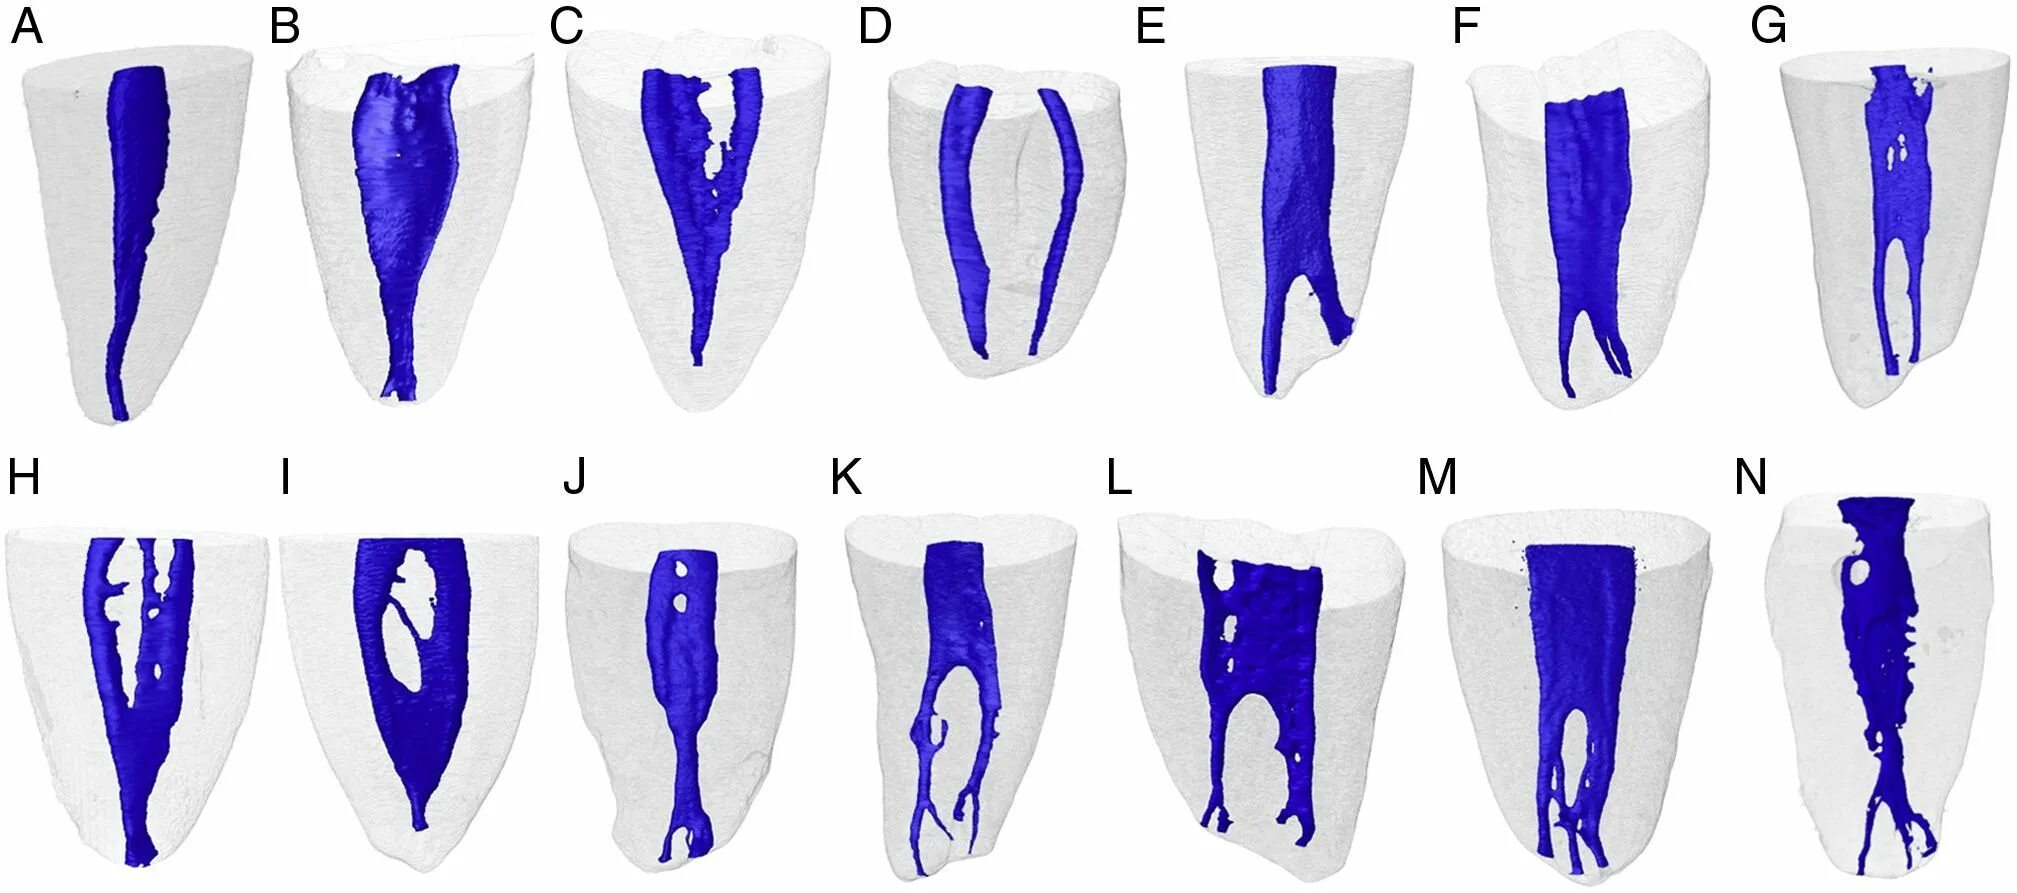 Классификация корневых каналов Vertucci. Топография корневых каналов 16 зуба. Конфигурация корневых каналов по Вертуччи. Зуб 3.6 анатомия каналов.